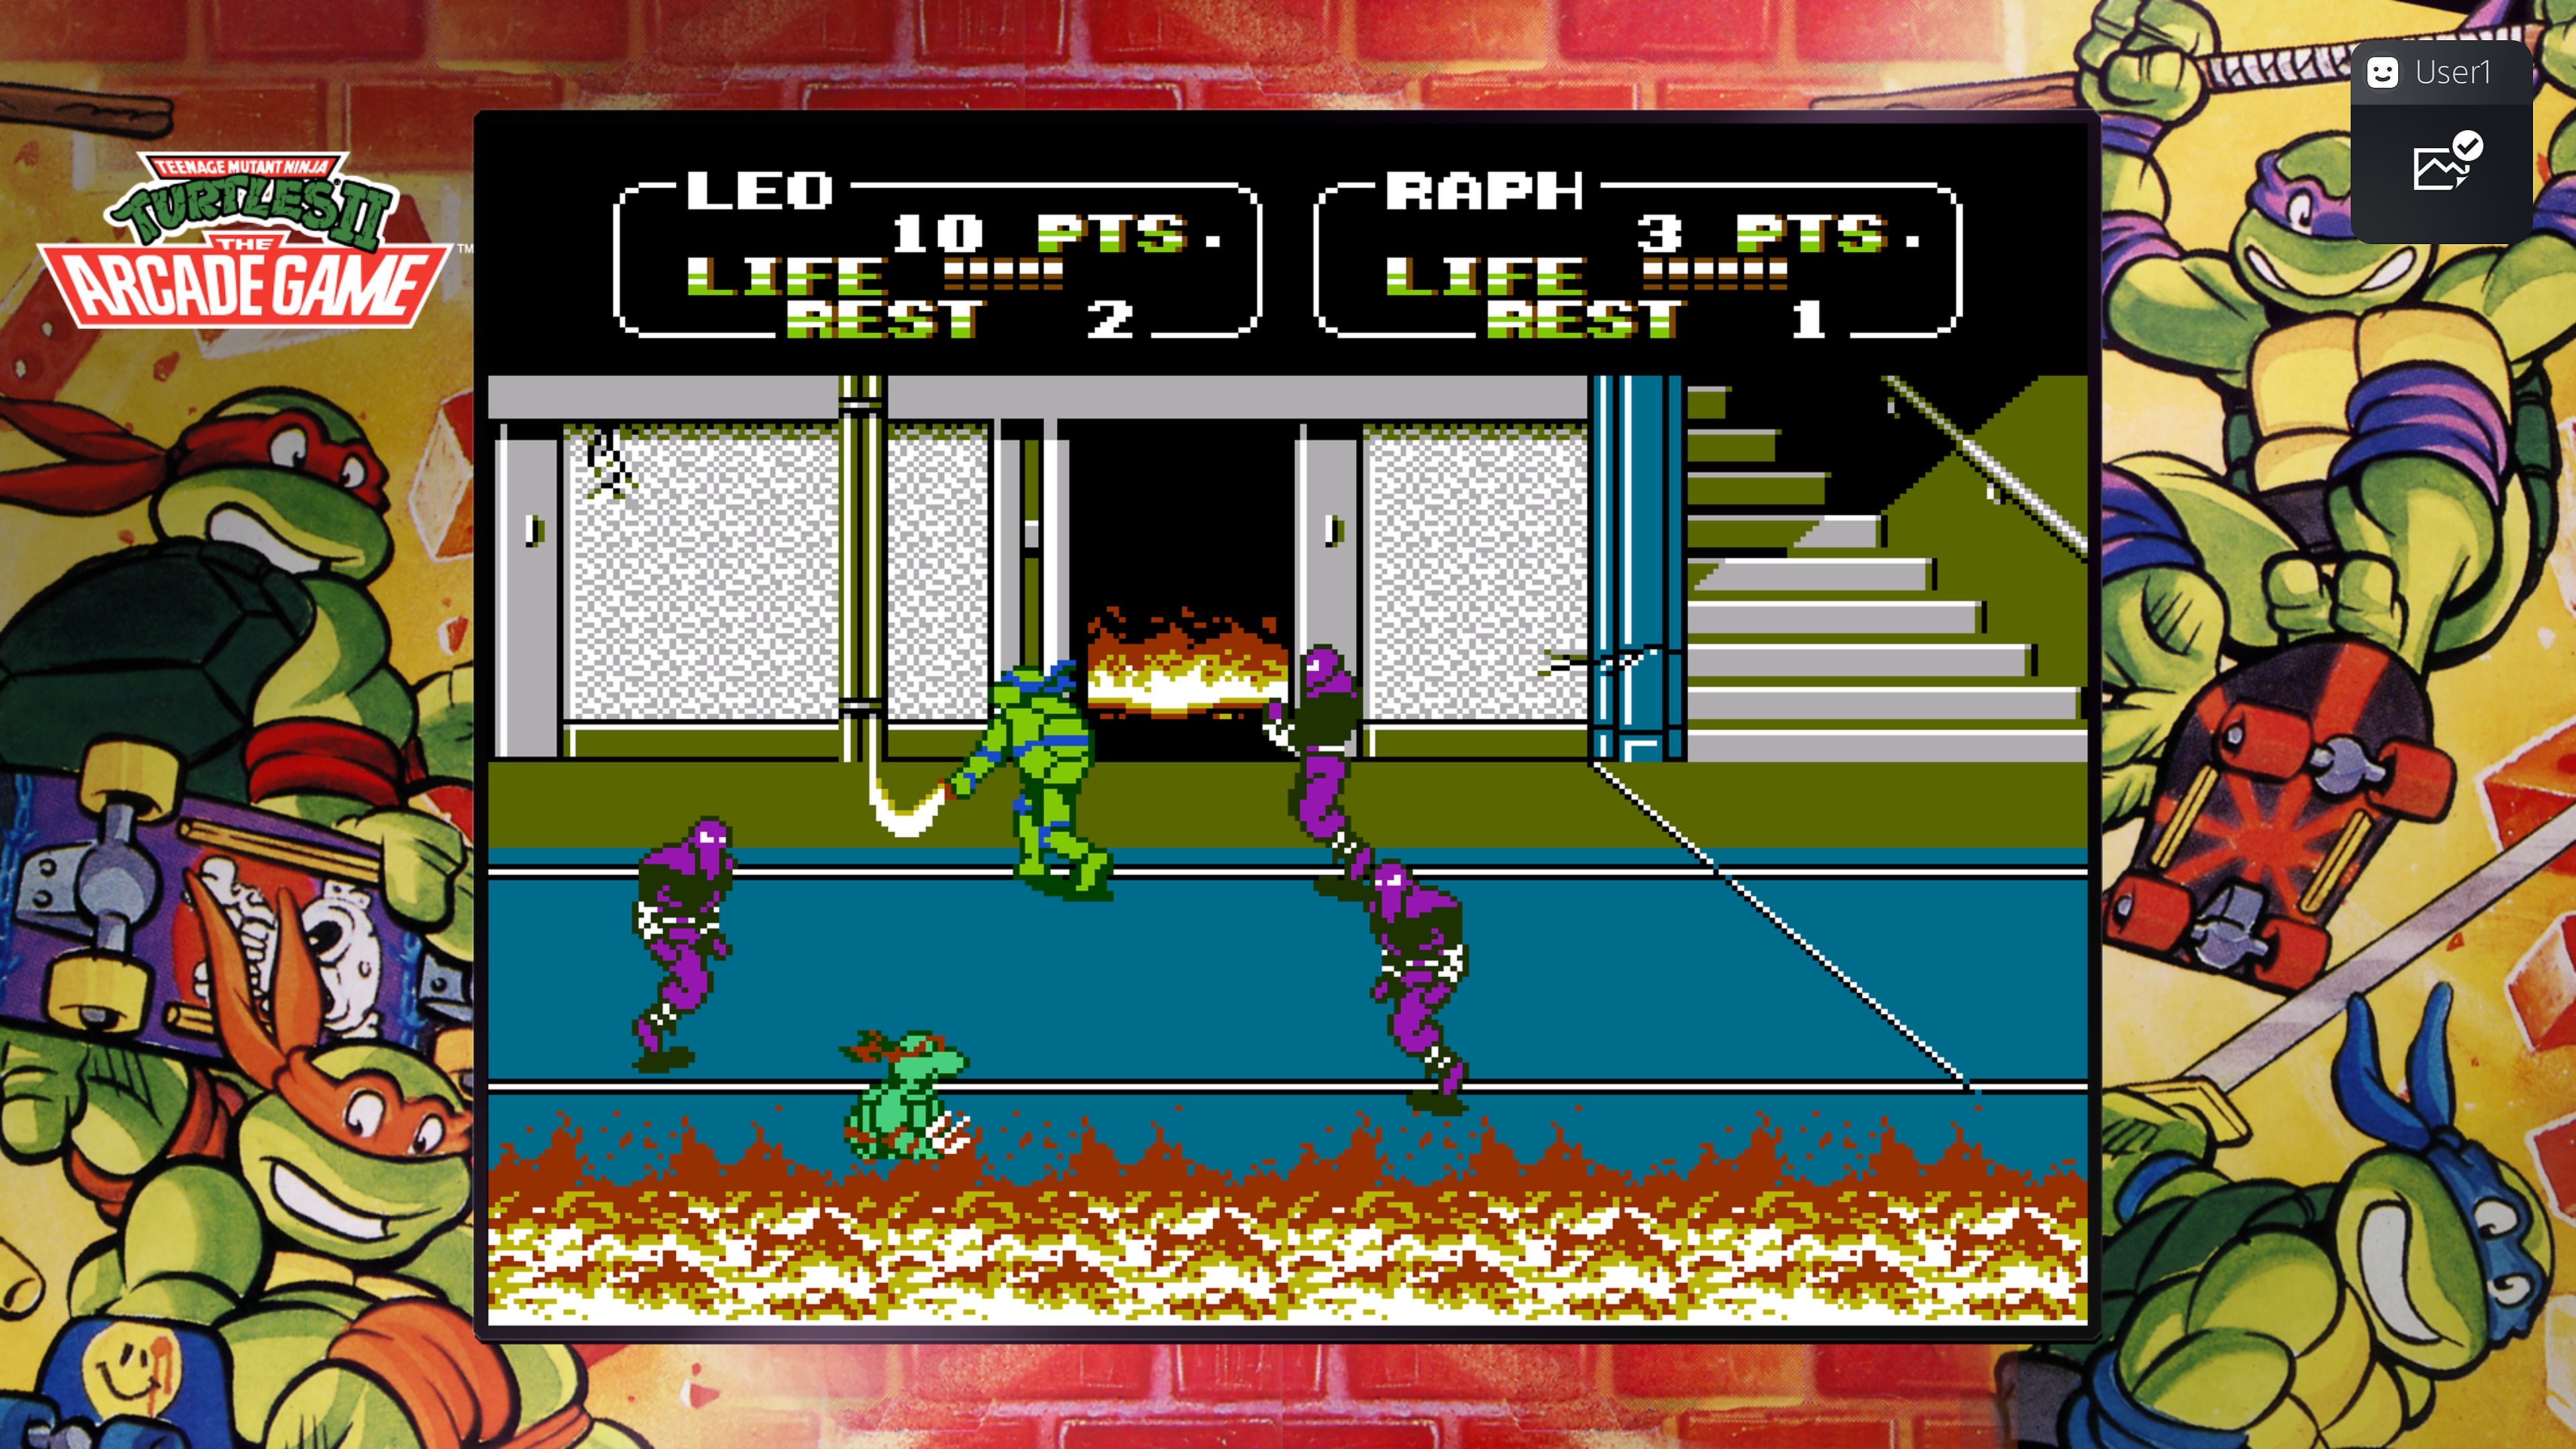 《忍者神龟合集-街机版》游戏截图展示莱昂纳多和拉斐尔正在和大脚帮对打